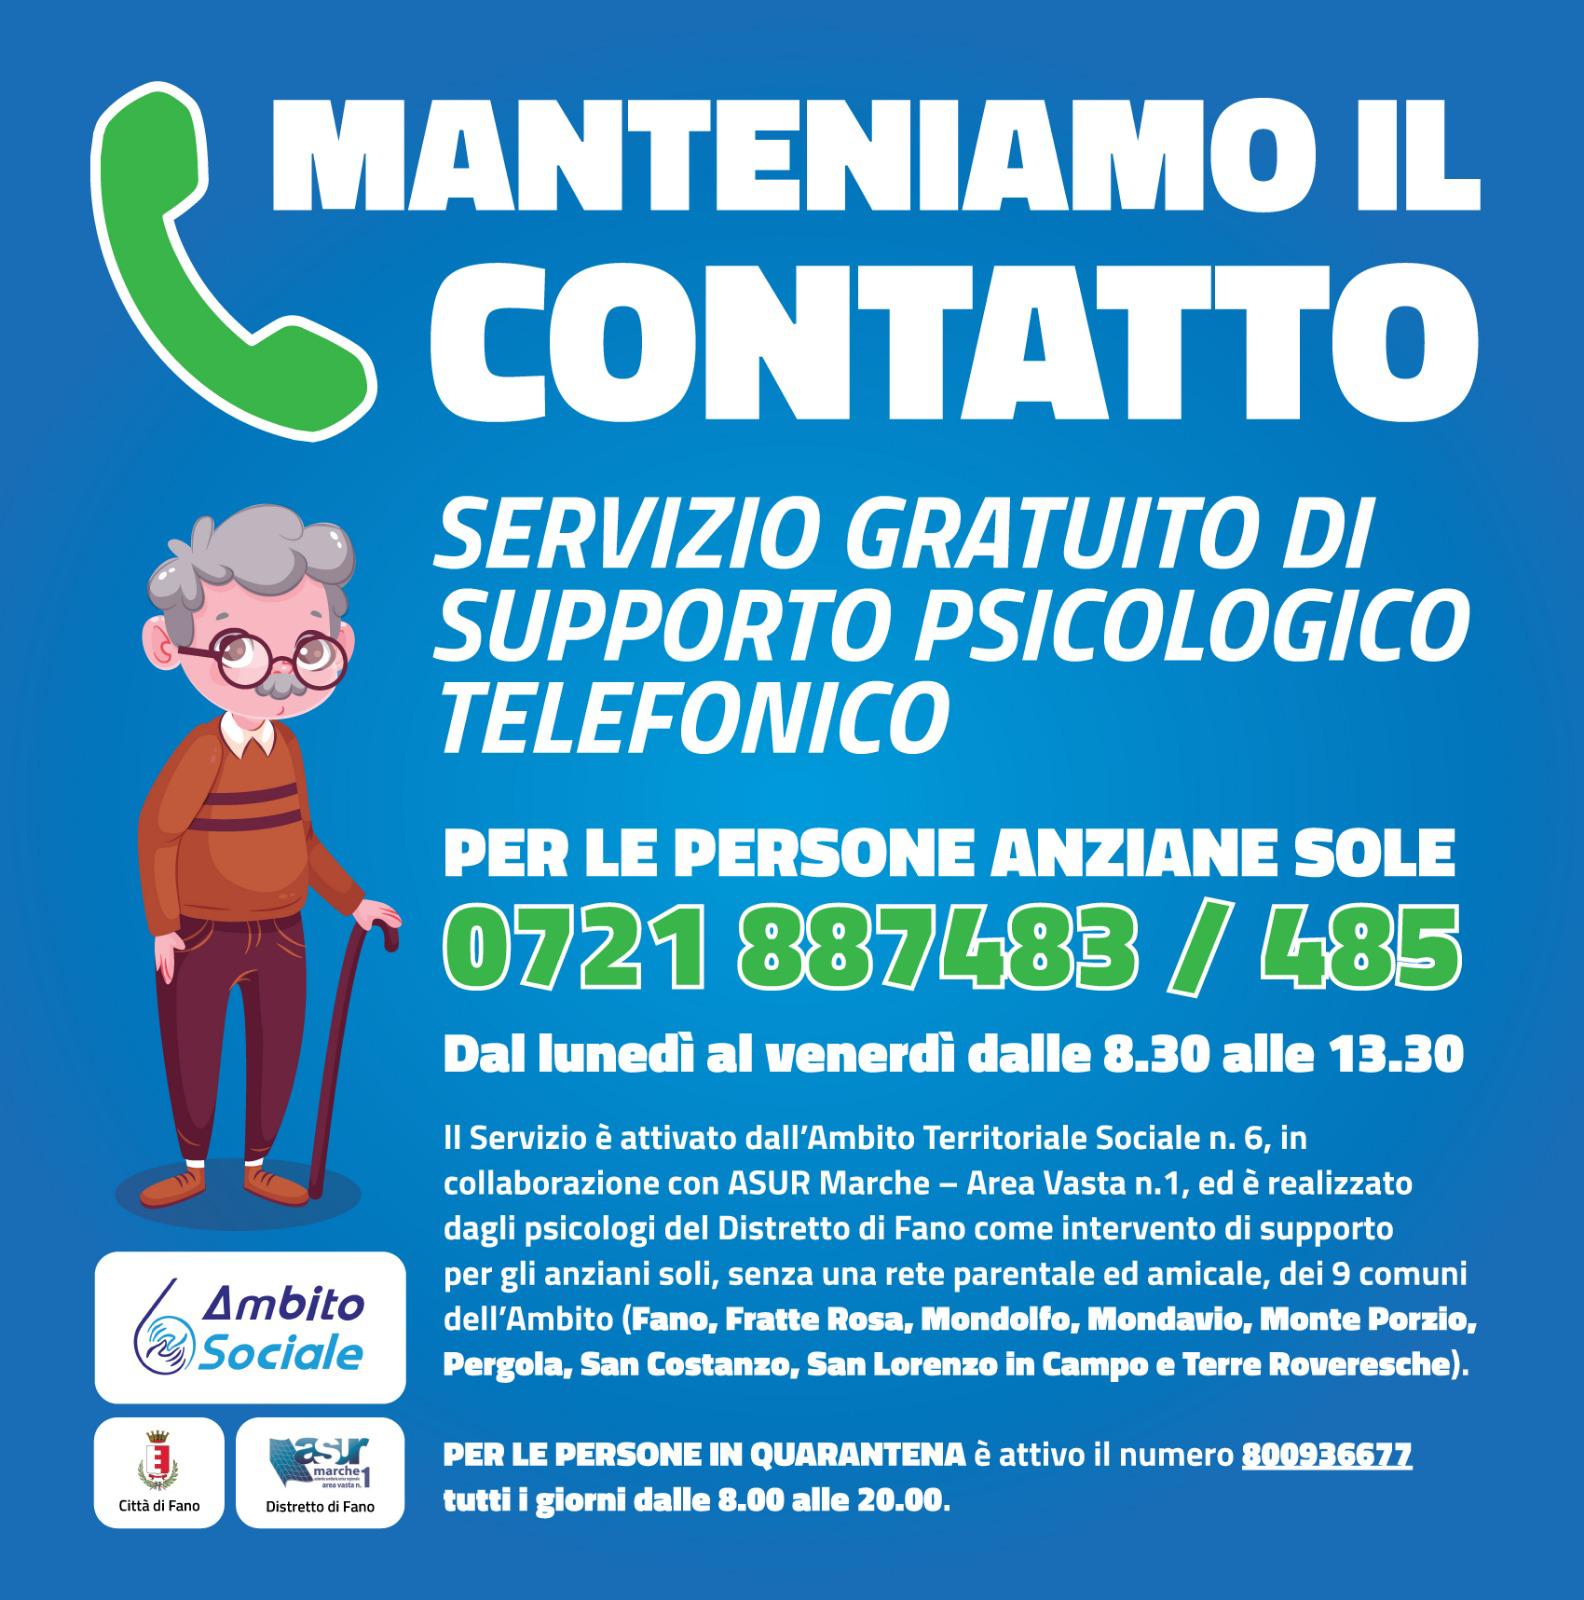 ATS6 Fano: Manteniamo il contatto. Servizio gratuito di supporto psicologico telefonico per anziani soli